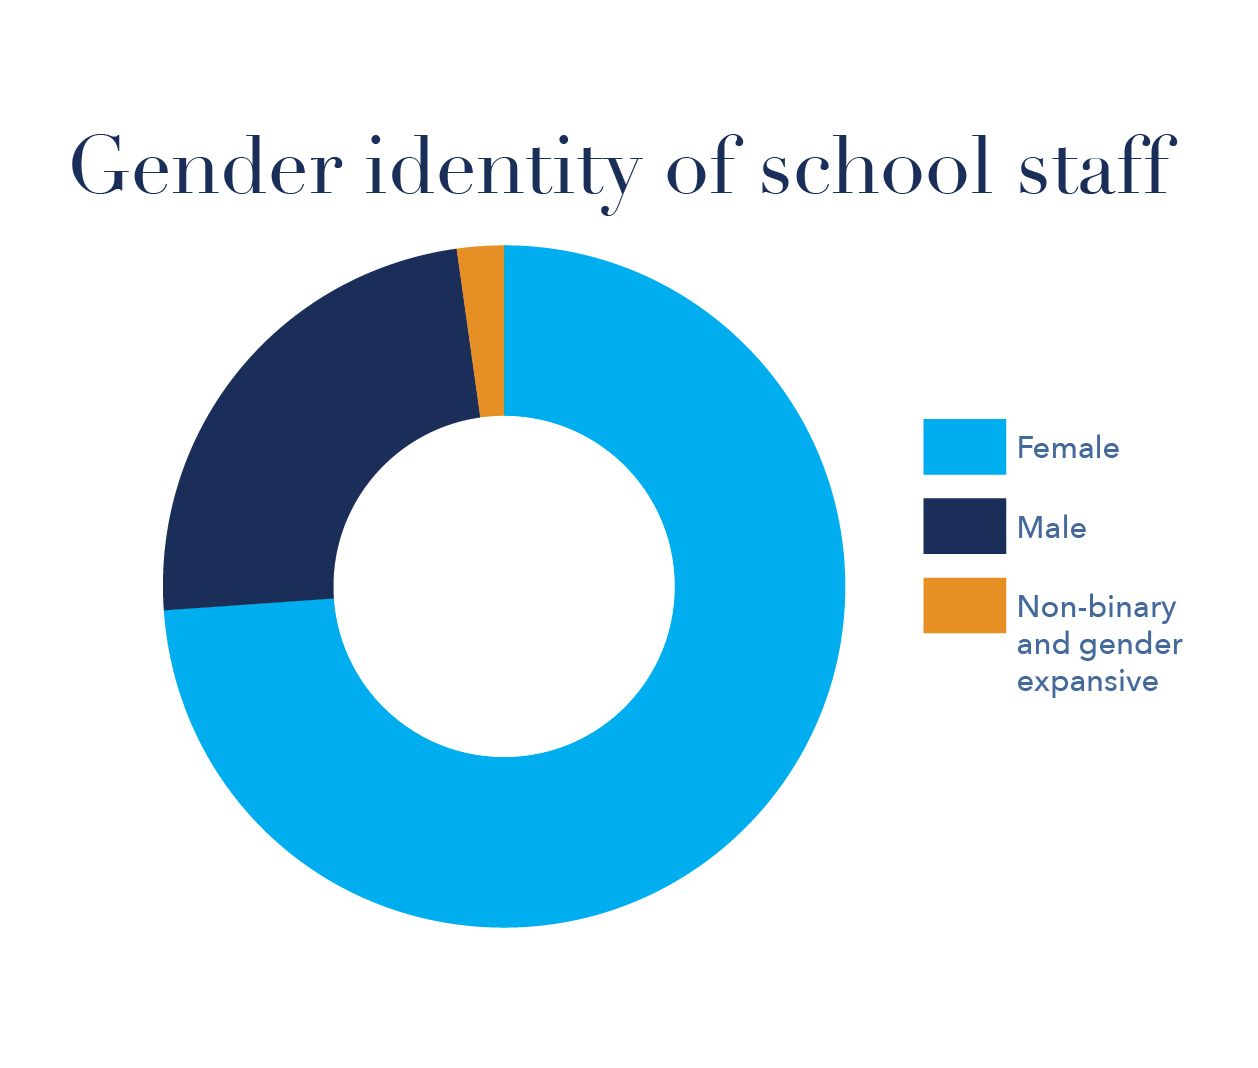 Gender identity of school leaders of school staff